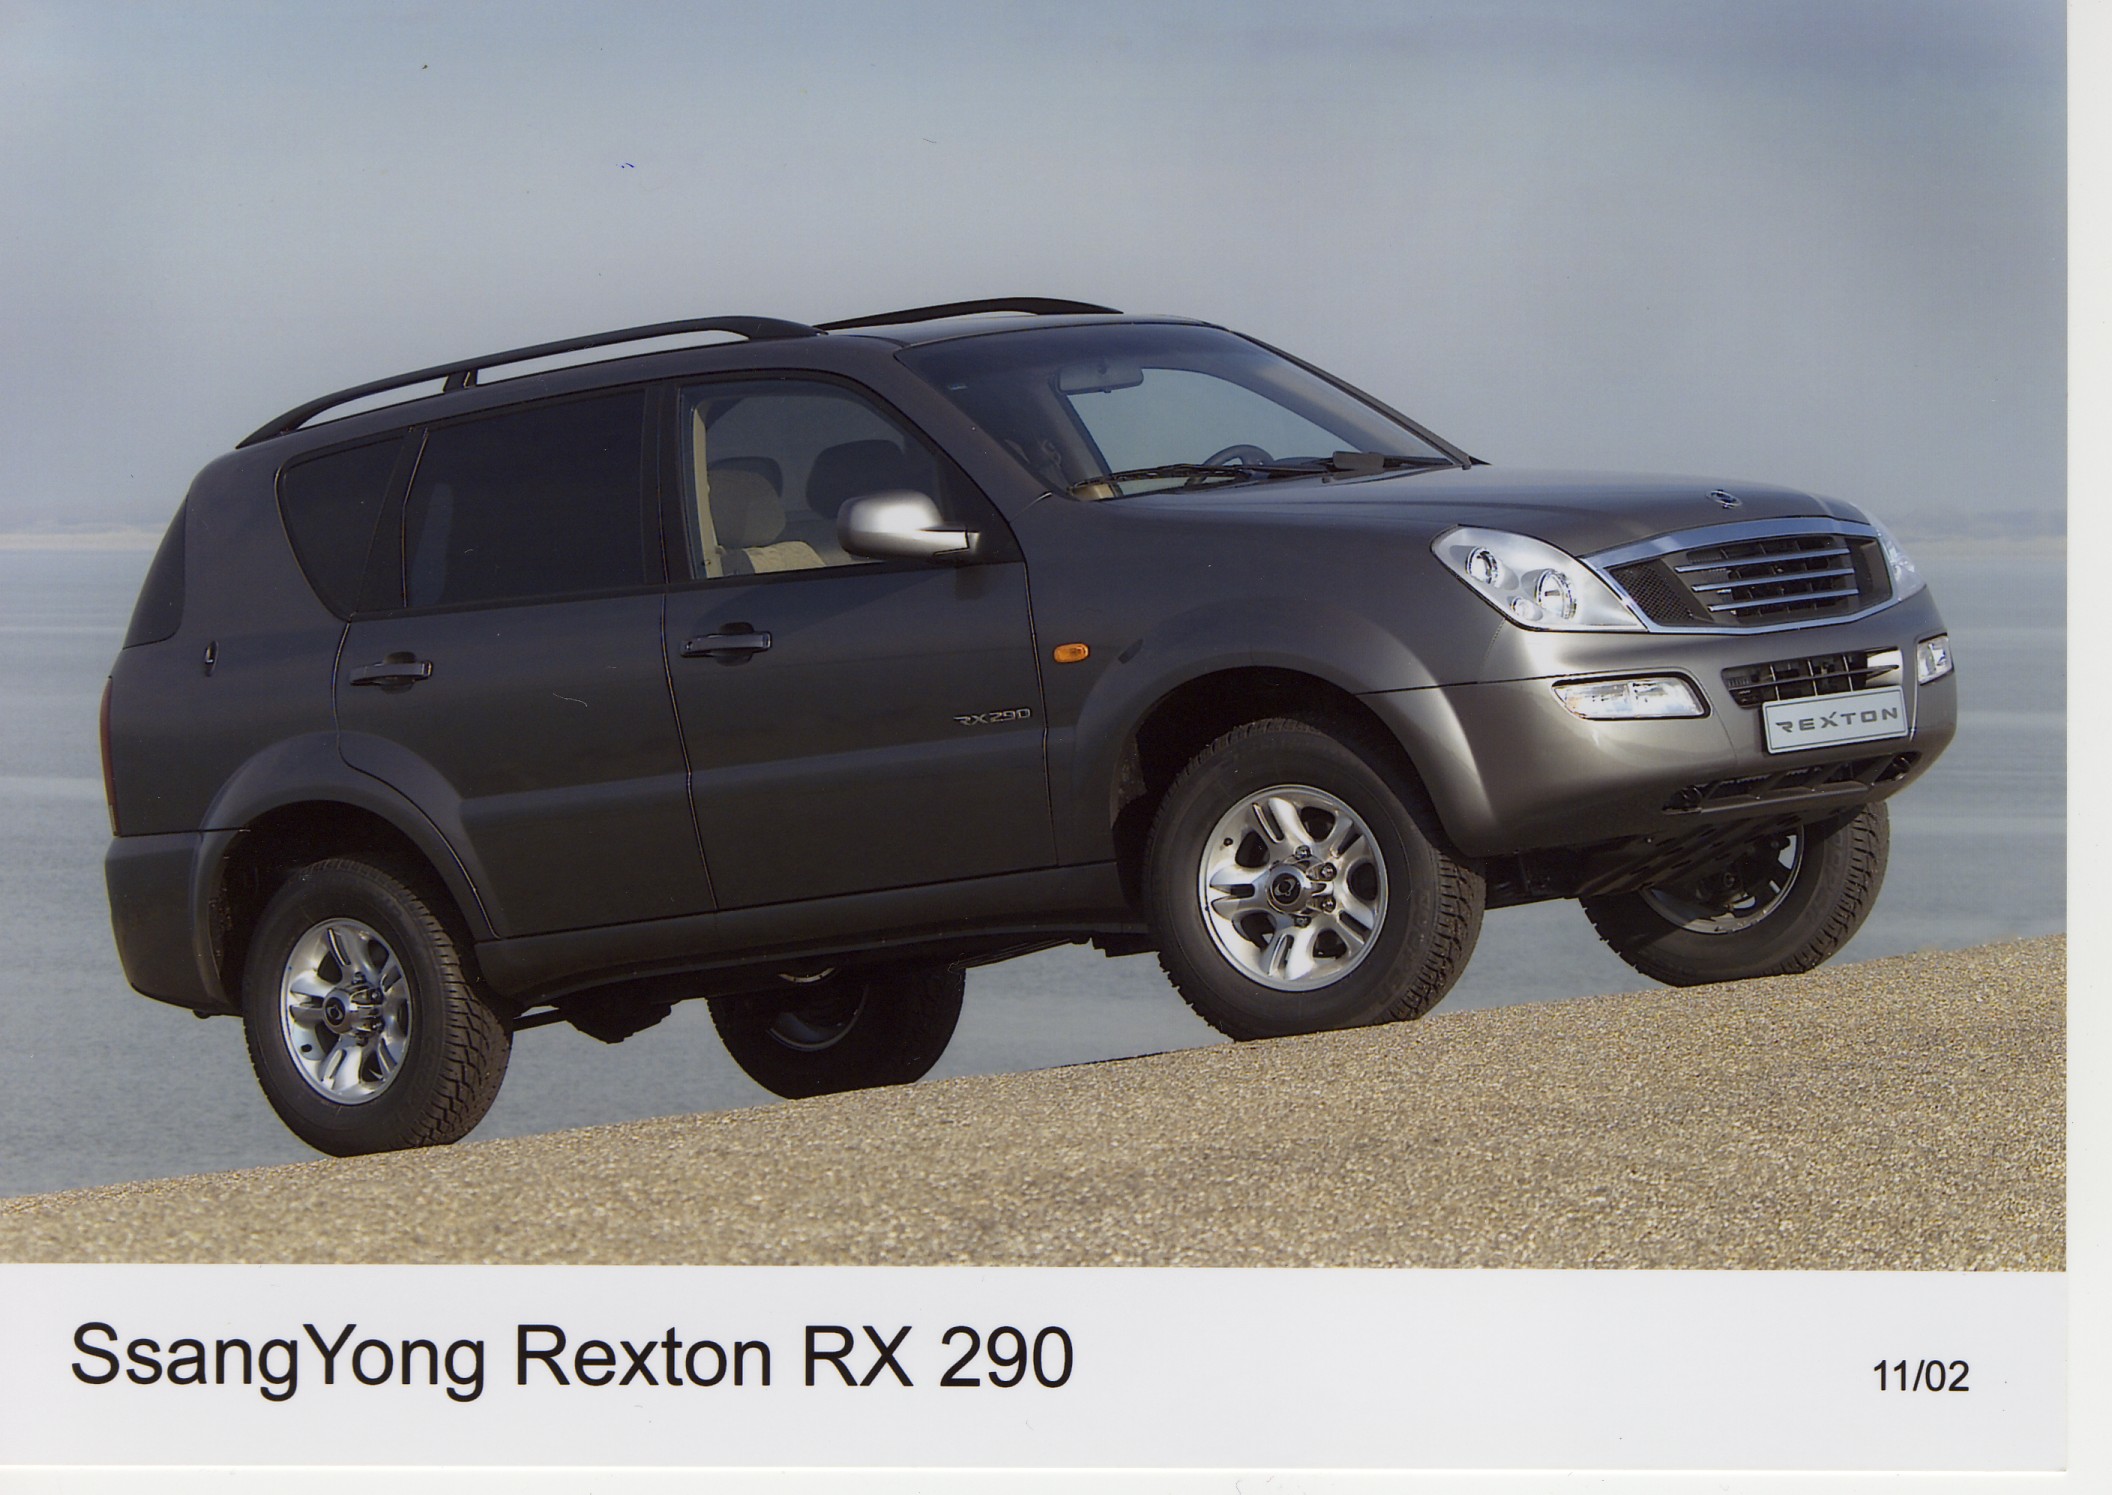 SsangYong Rexton RX 290 S